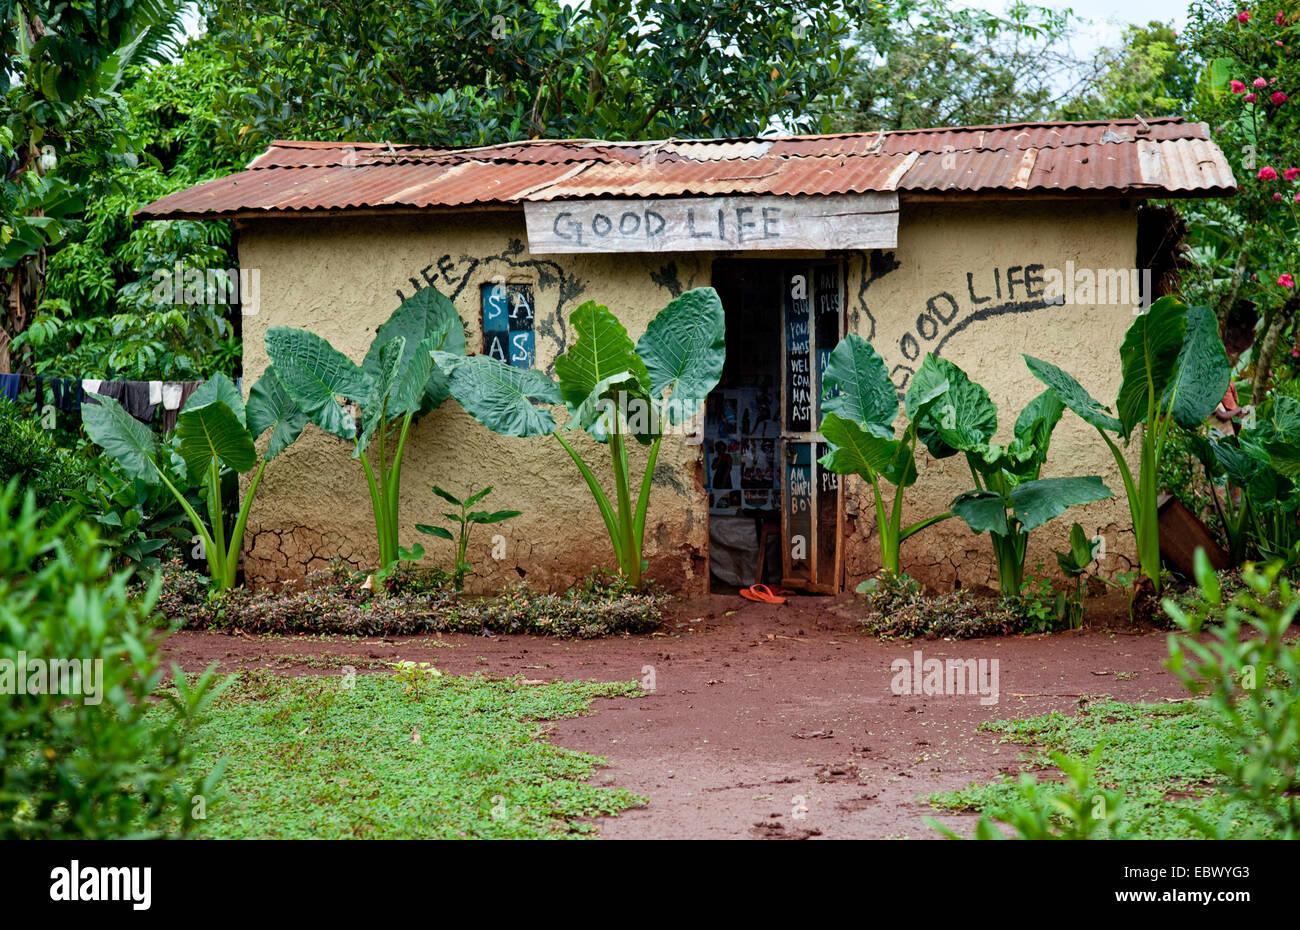 Simples de fango en un área pobre de la casa ha sido pintada con las palabras "buena vida", en Jinja, Uganda Foto de stock